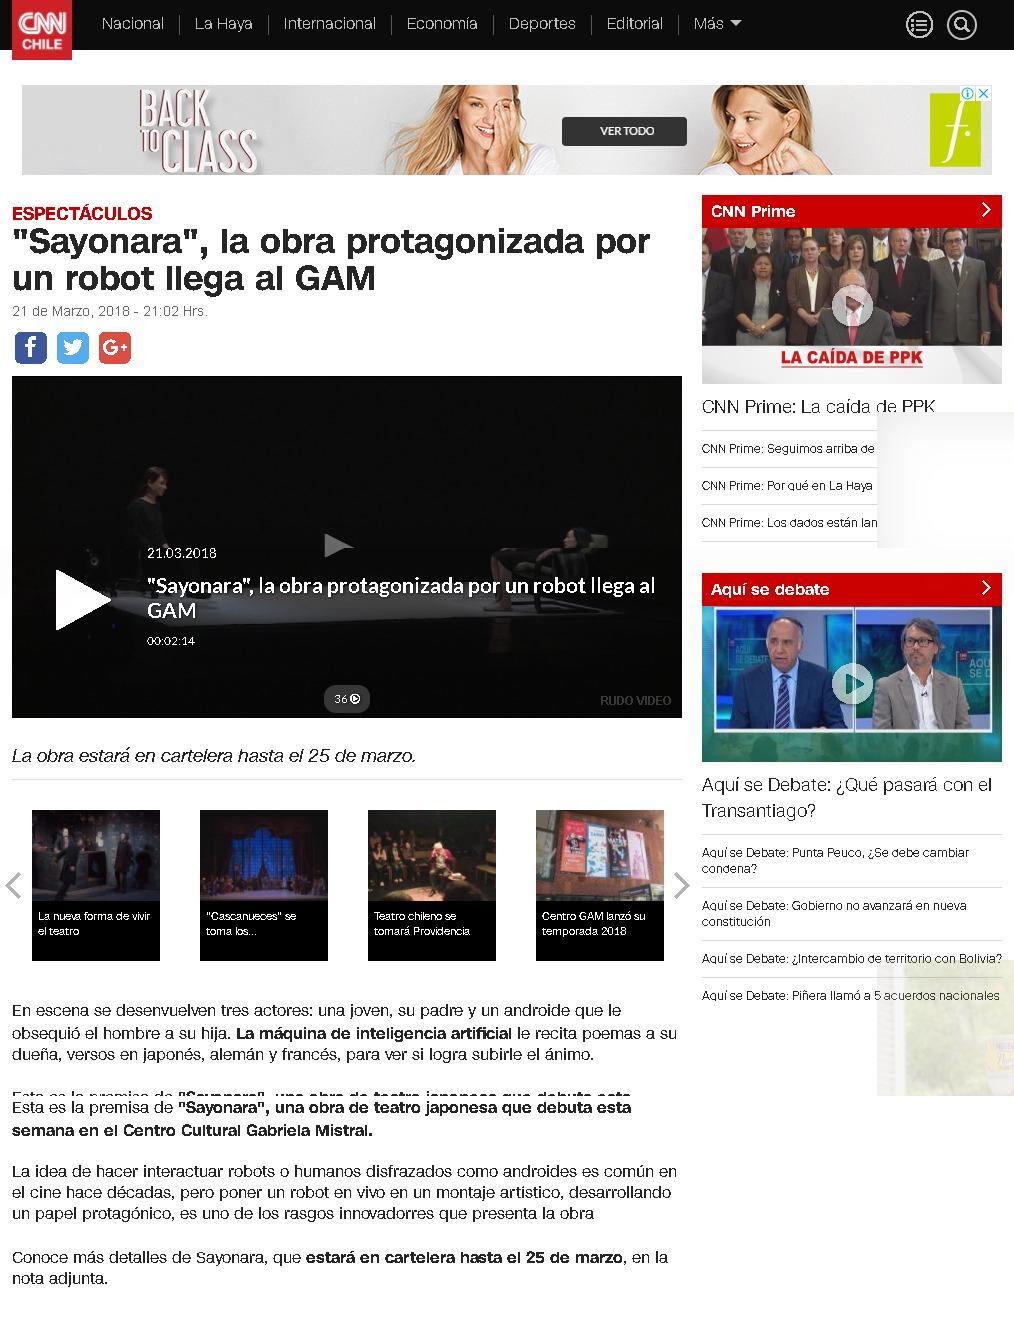 CNN Chile